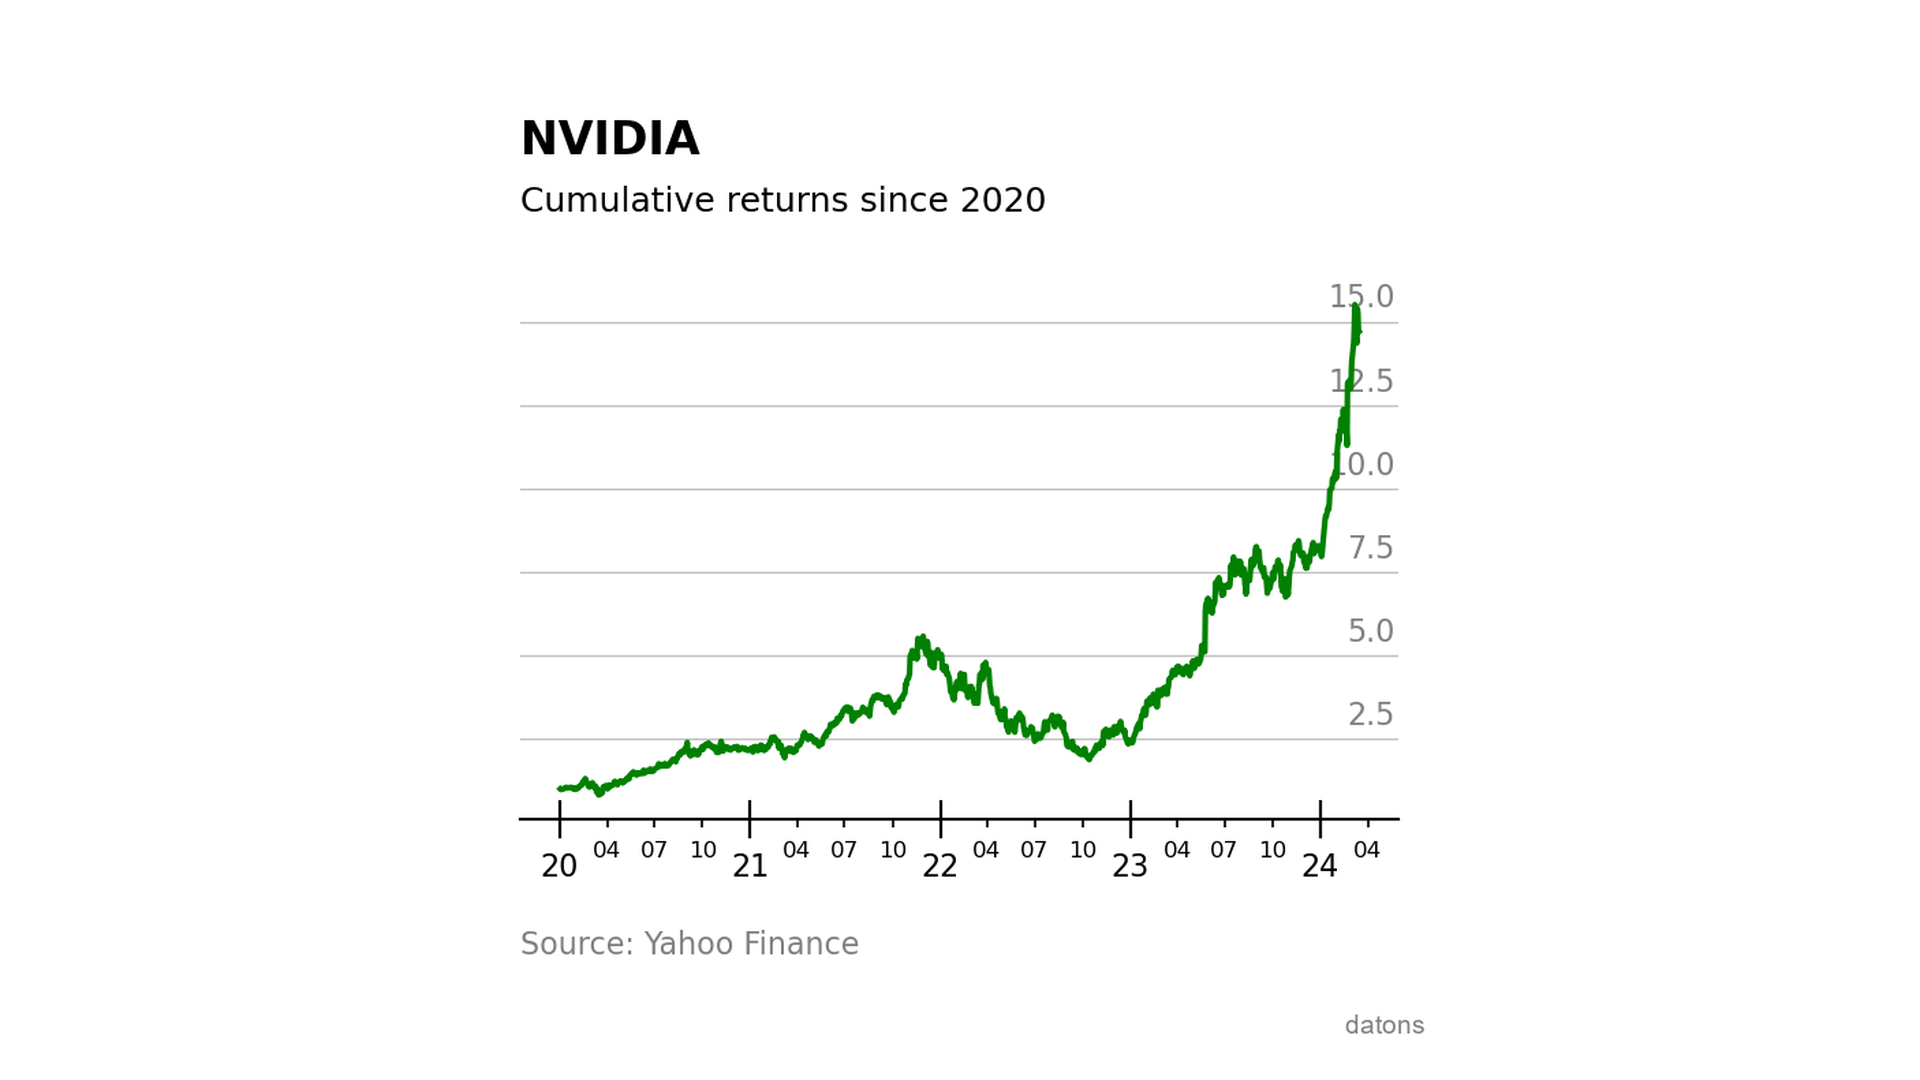 Gráfico del rendimiento acumulado de una inversión en acciones de NVIDIA desde el inicio de 2020, mostrando un crecimiento exponencial.